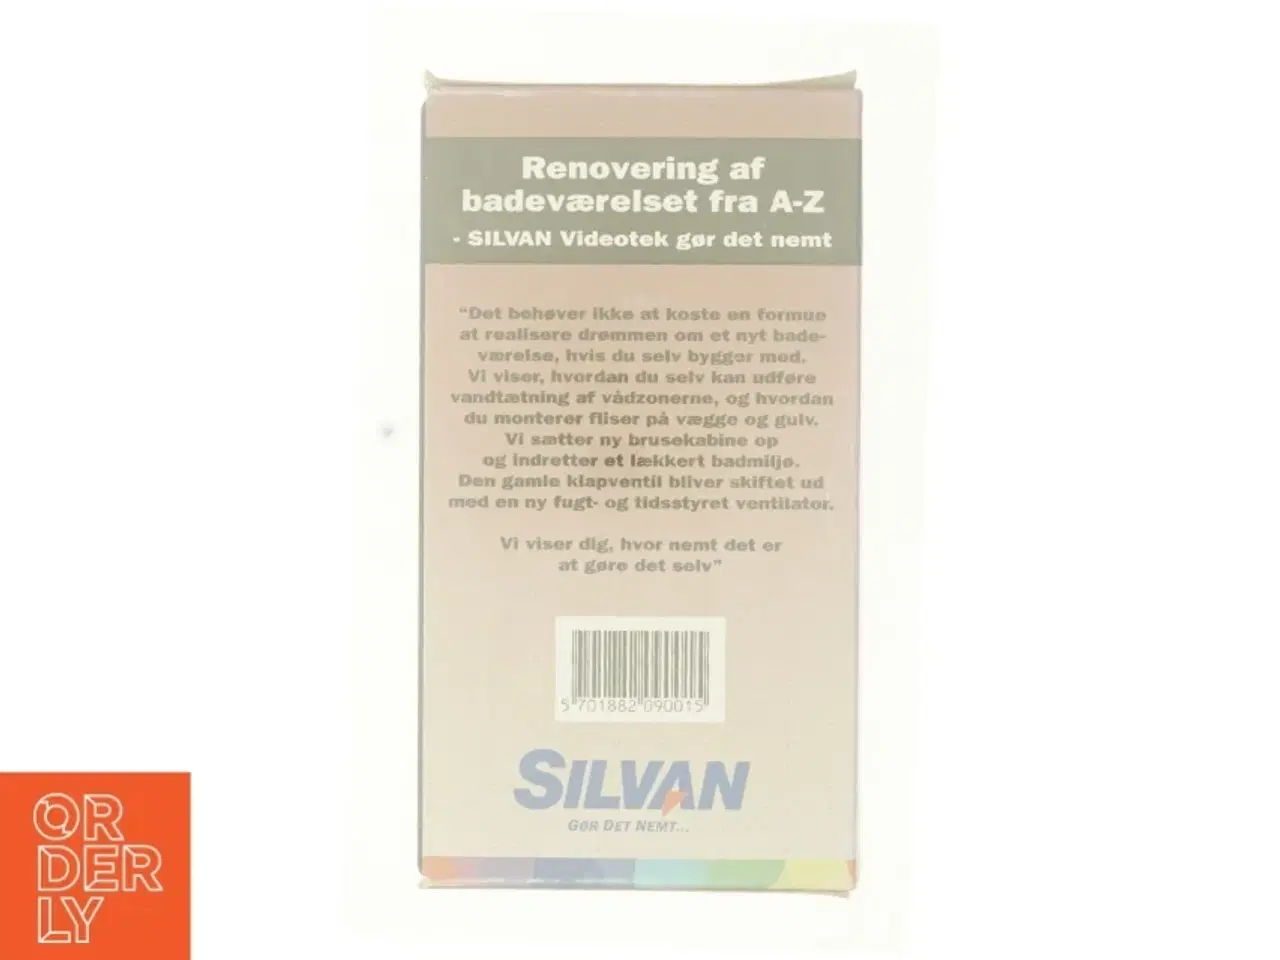 Billede 3 - Renovering af badeværelse VHS fra Silvan